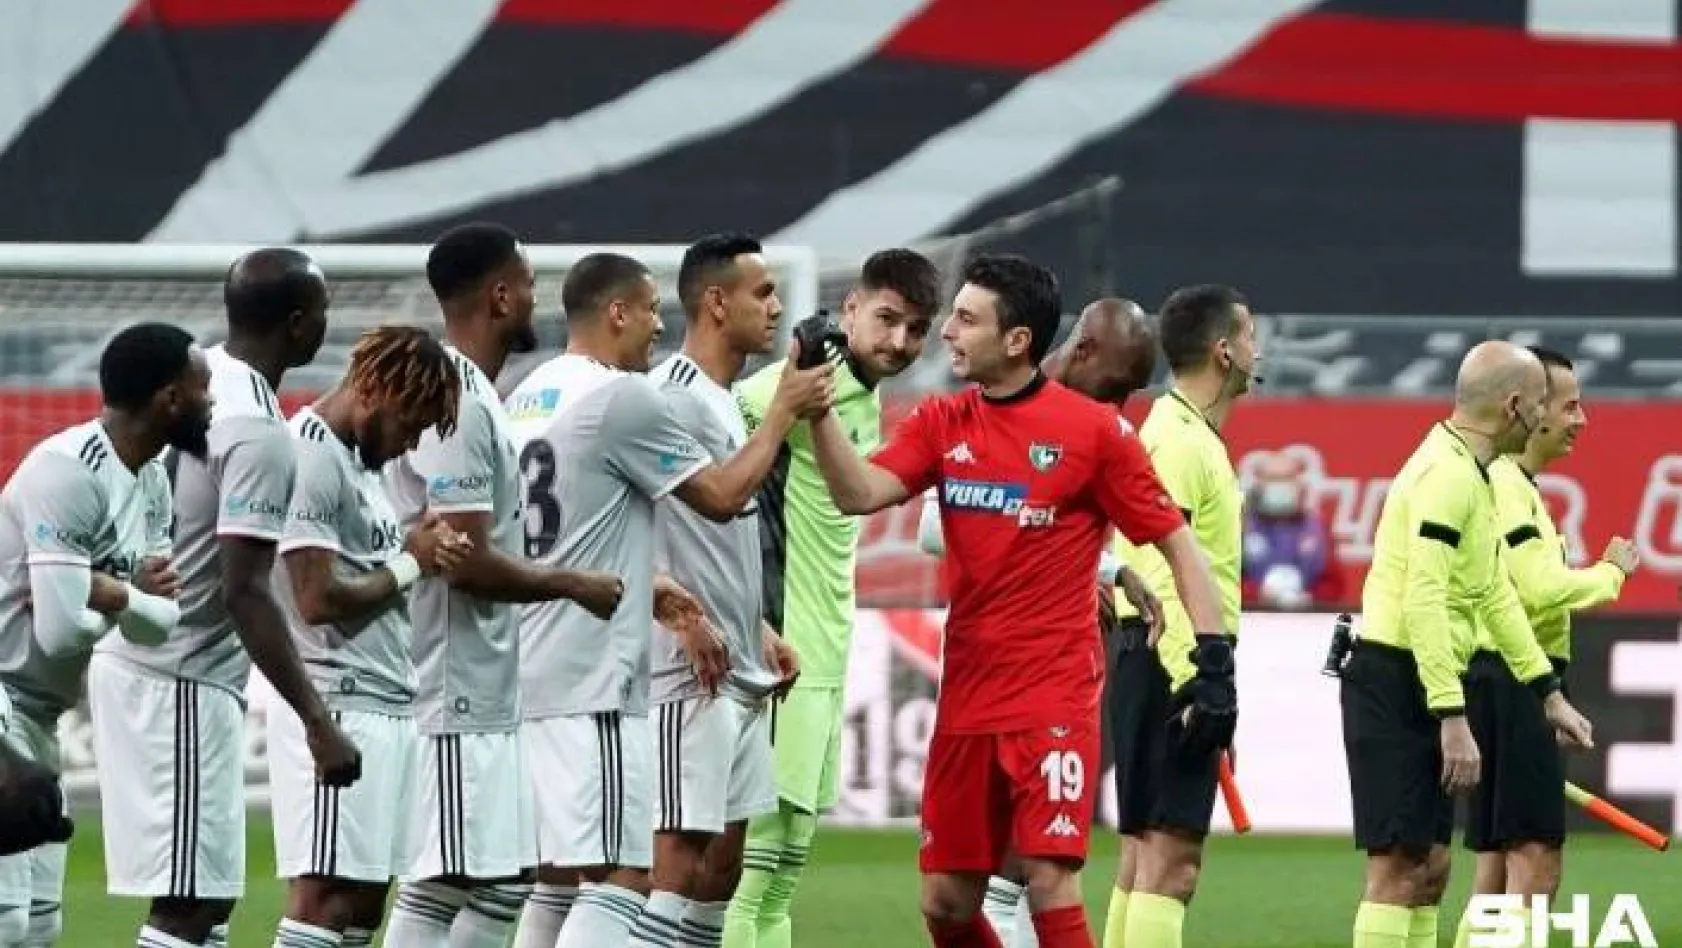 Süper Lig: Beşiktaş: 3 - Y. Denizlispor: 0 (İlk yarı)